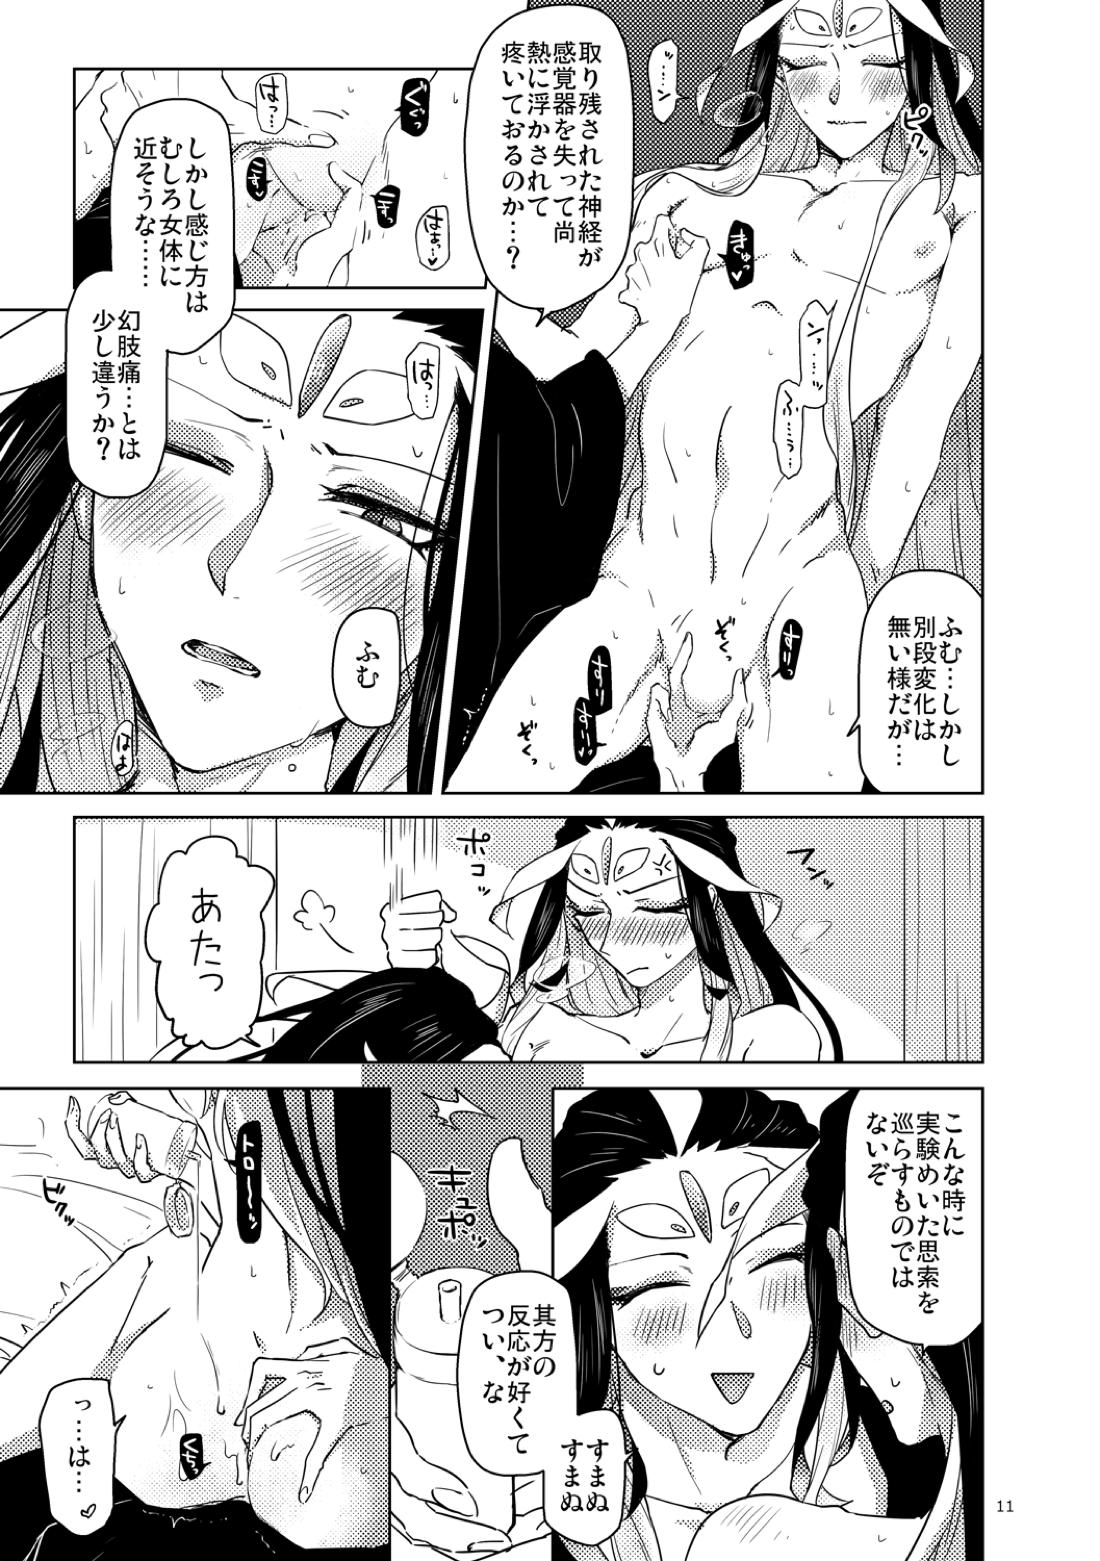 【BL漫画 Fate/Grand Order】男性体と無性体の始皇帝が同期するために媚薬を口にしながら肌を重ねるイチャイチャボーイズラブエッチ12